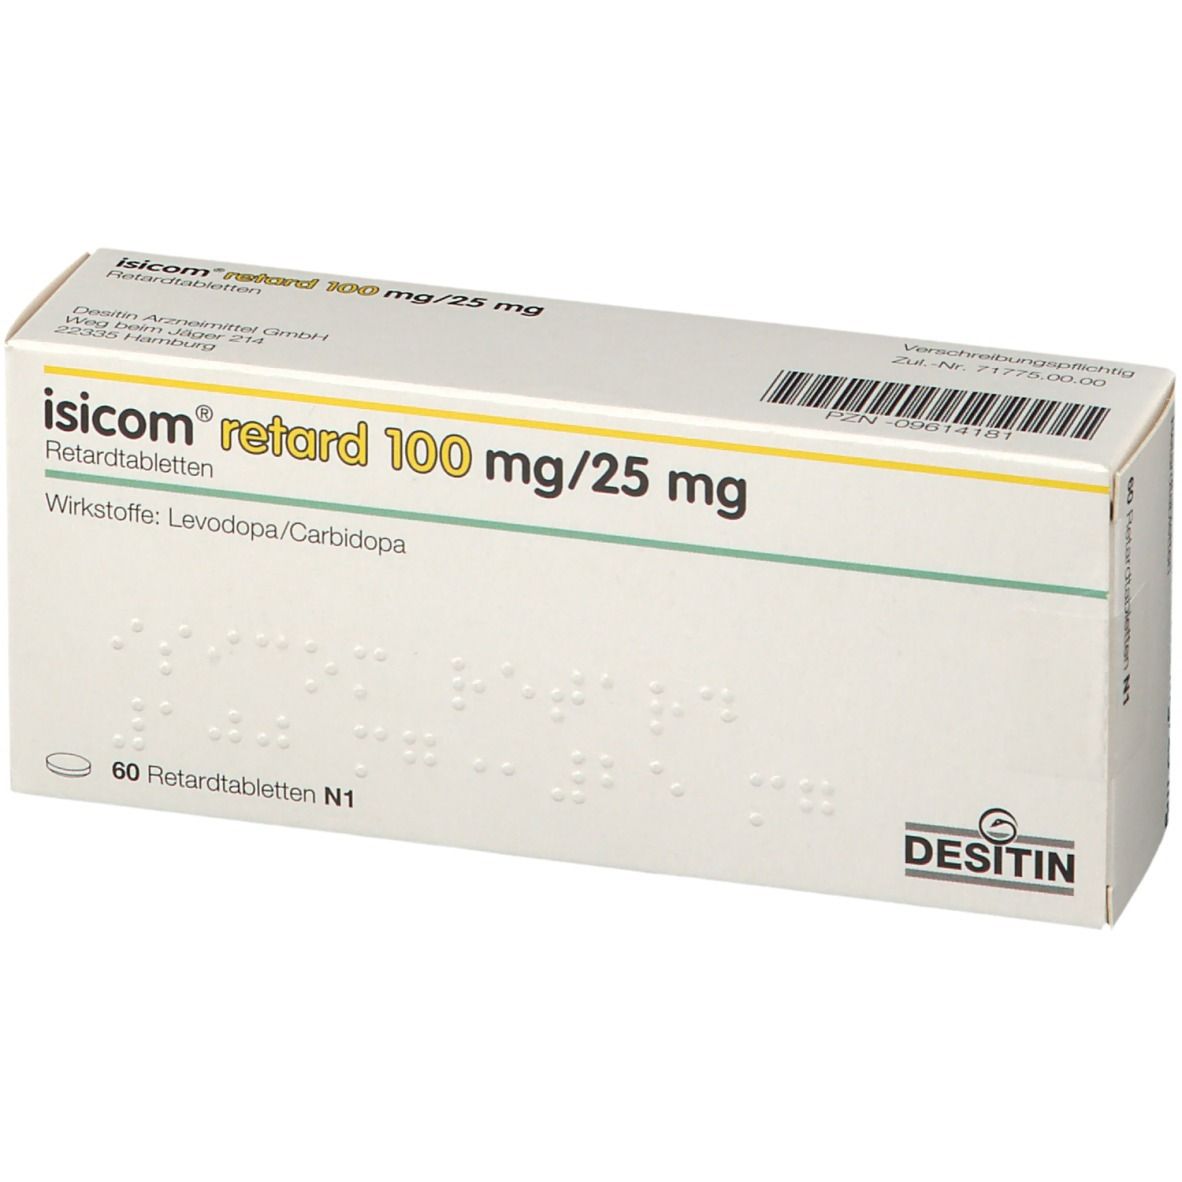 isicom® retard 100 mg/25 mg